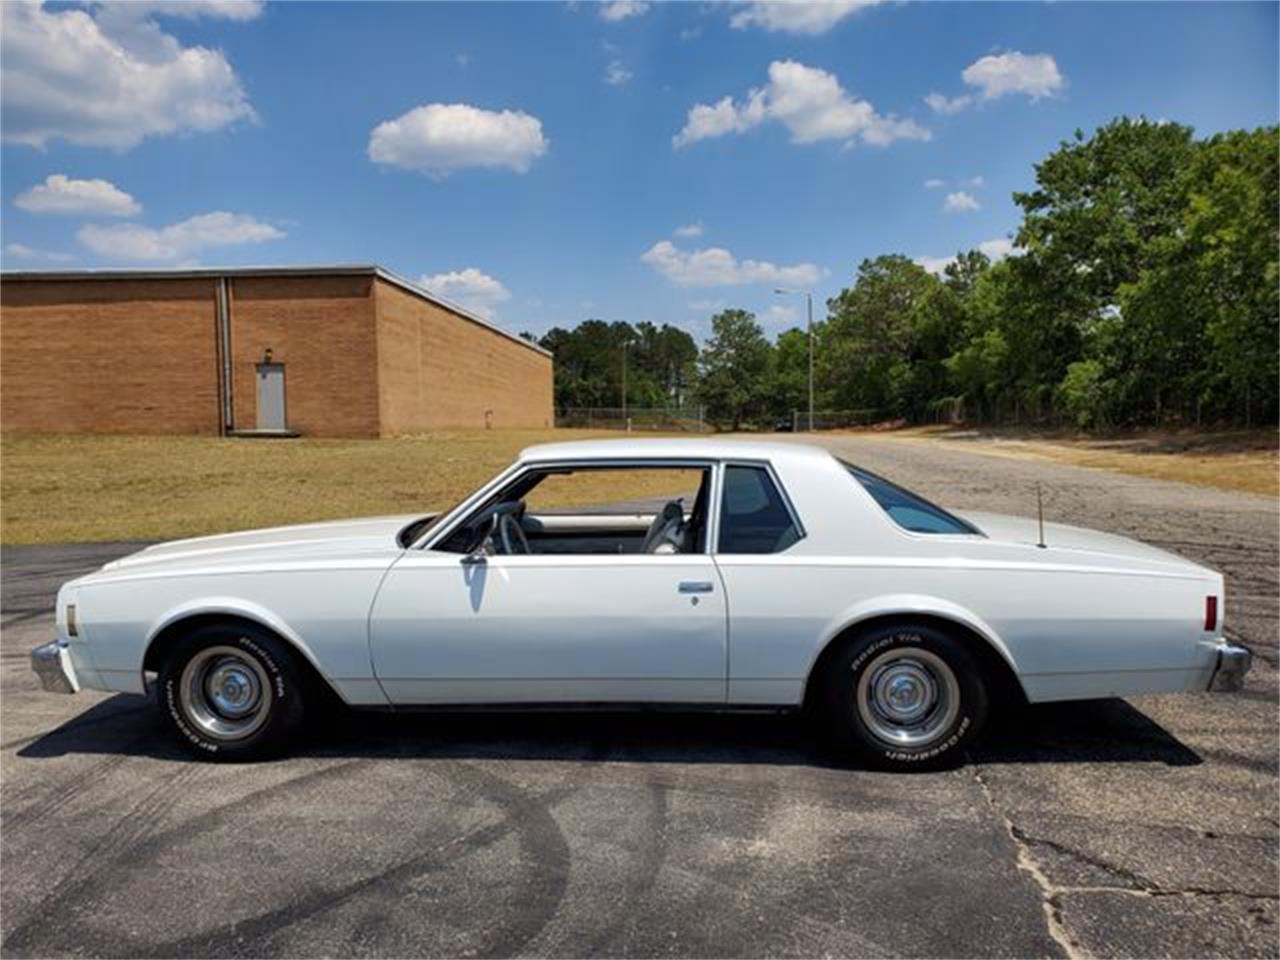 1977 chevrolet impala for sale classiccars com cc 1225349 1977 chevrolet impala for sale